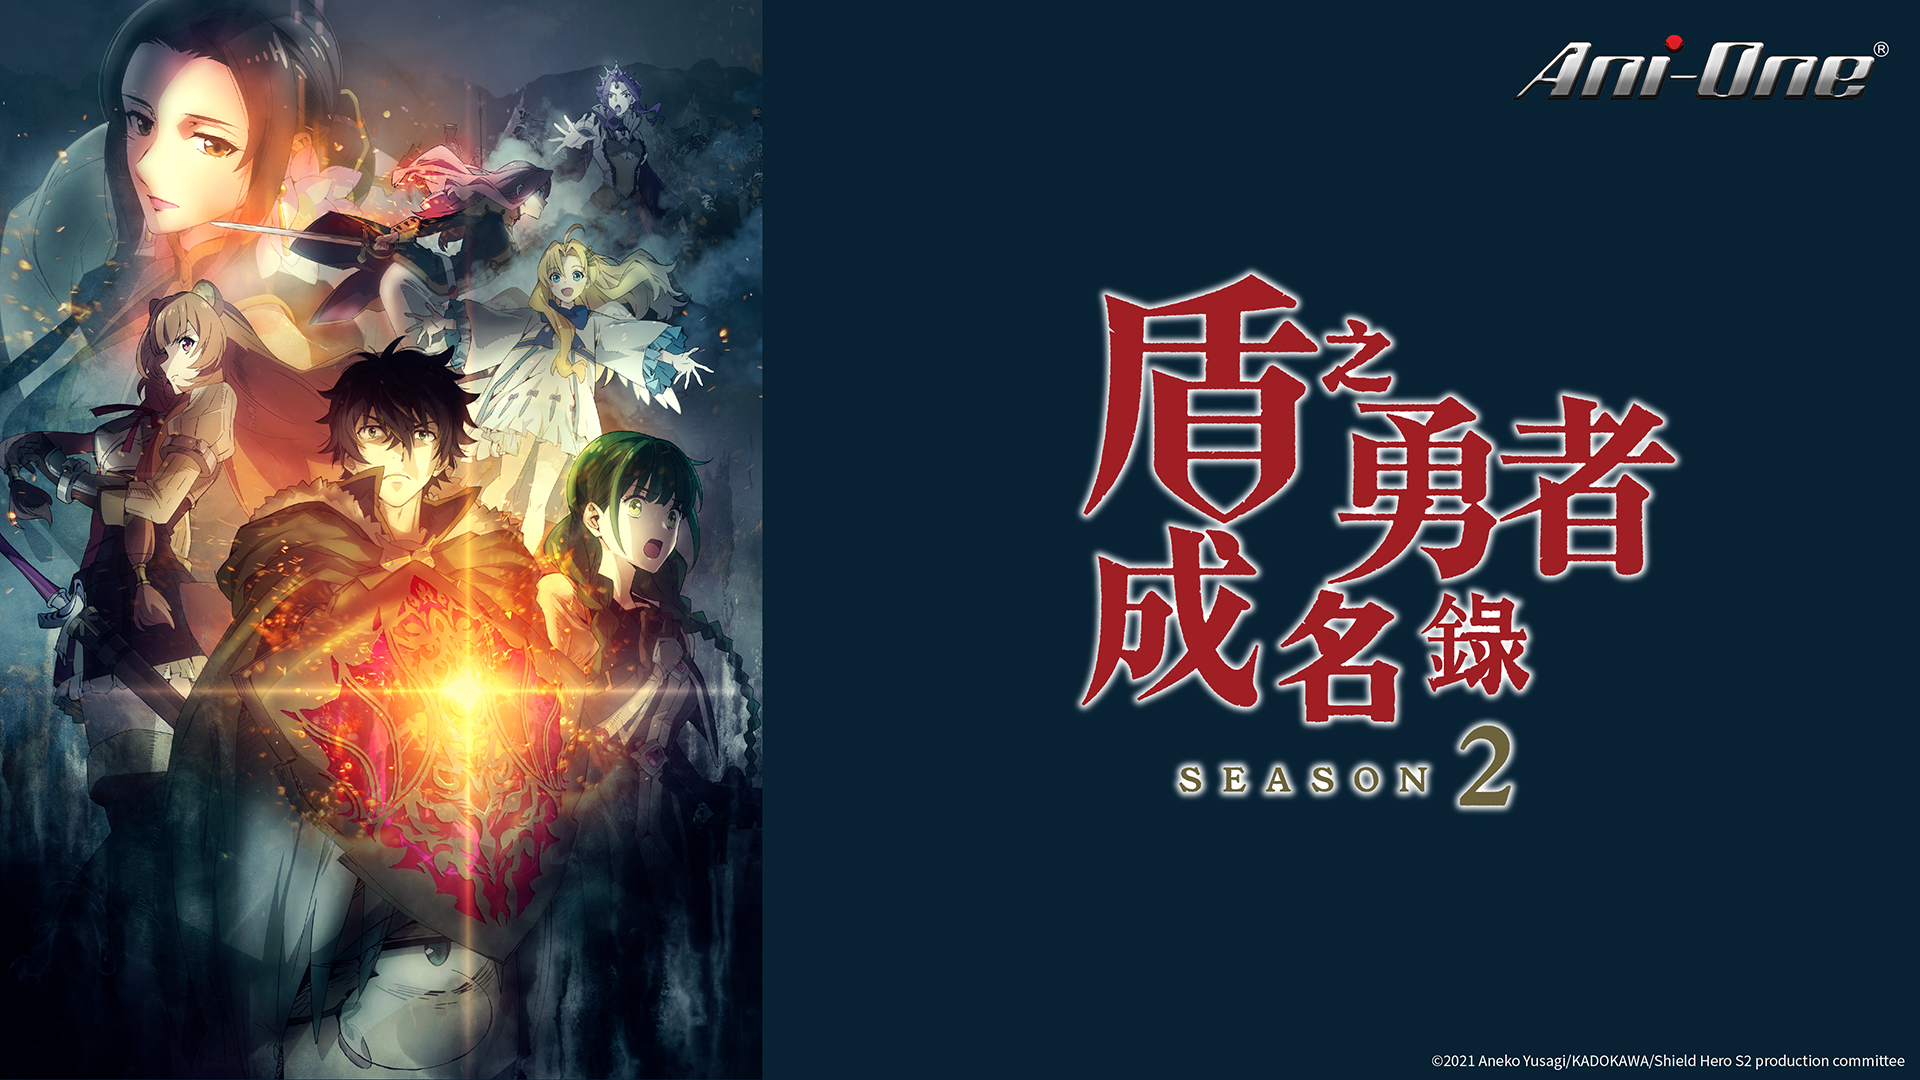 2 New Haikyu!! OVAs Added by Ani-One Asia